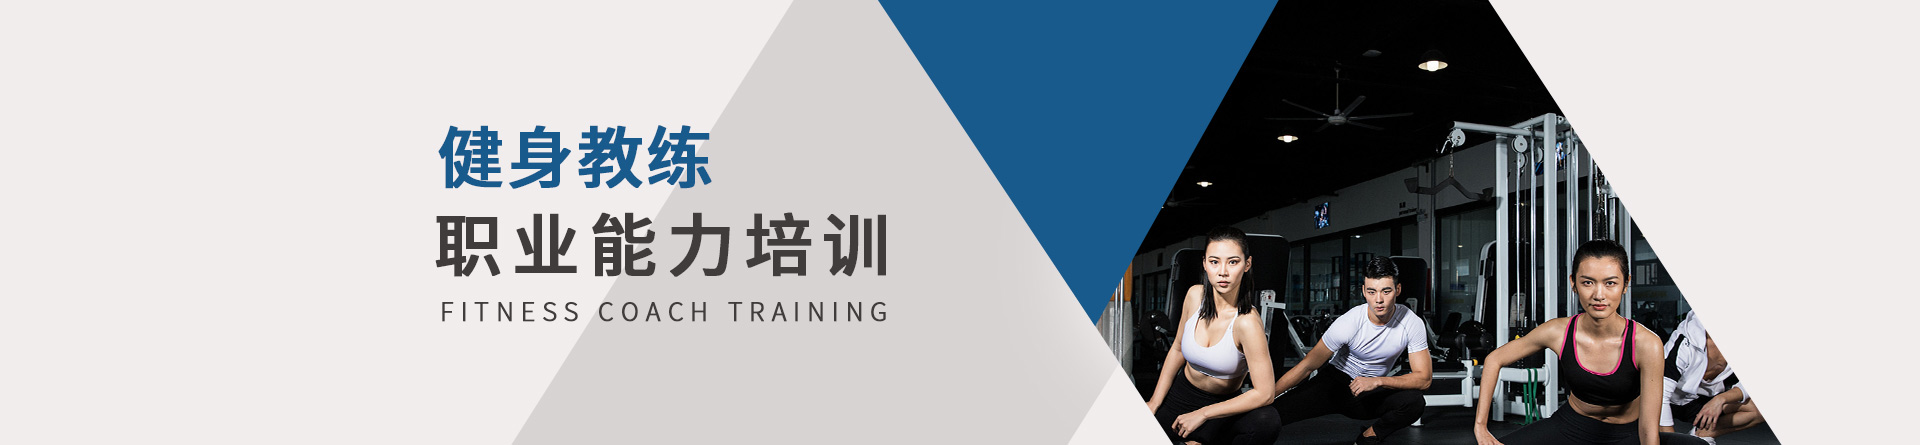 武汉空中健身学院 横幅广告